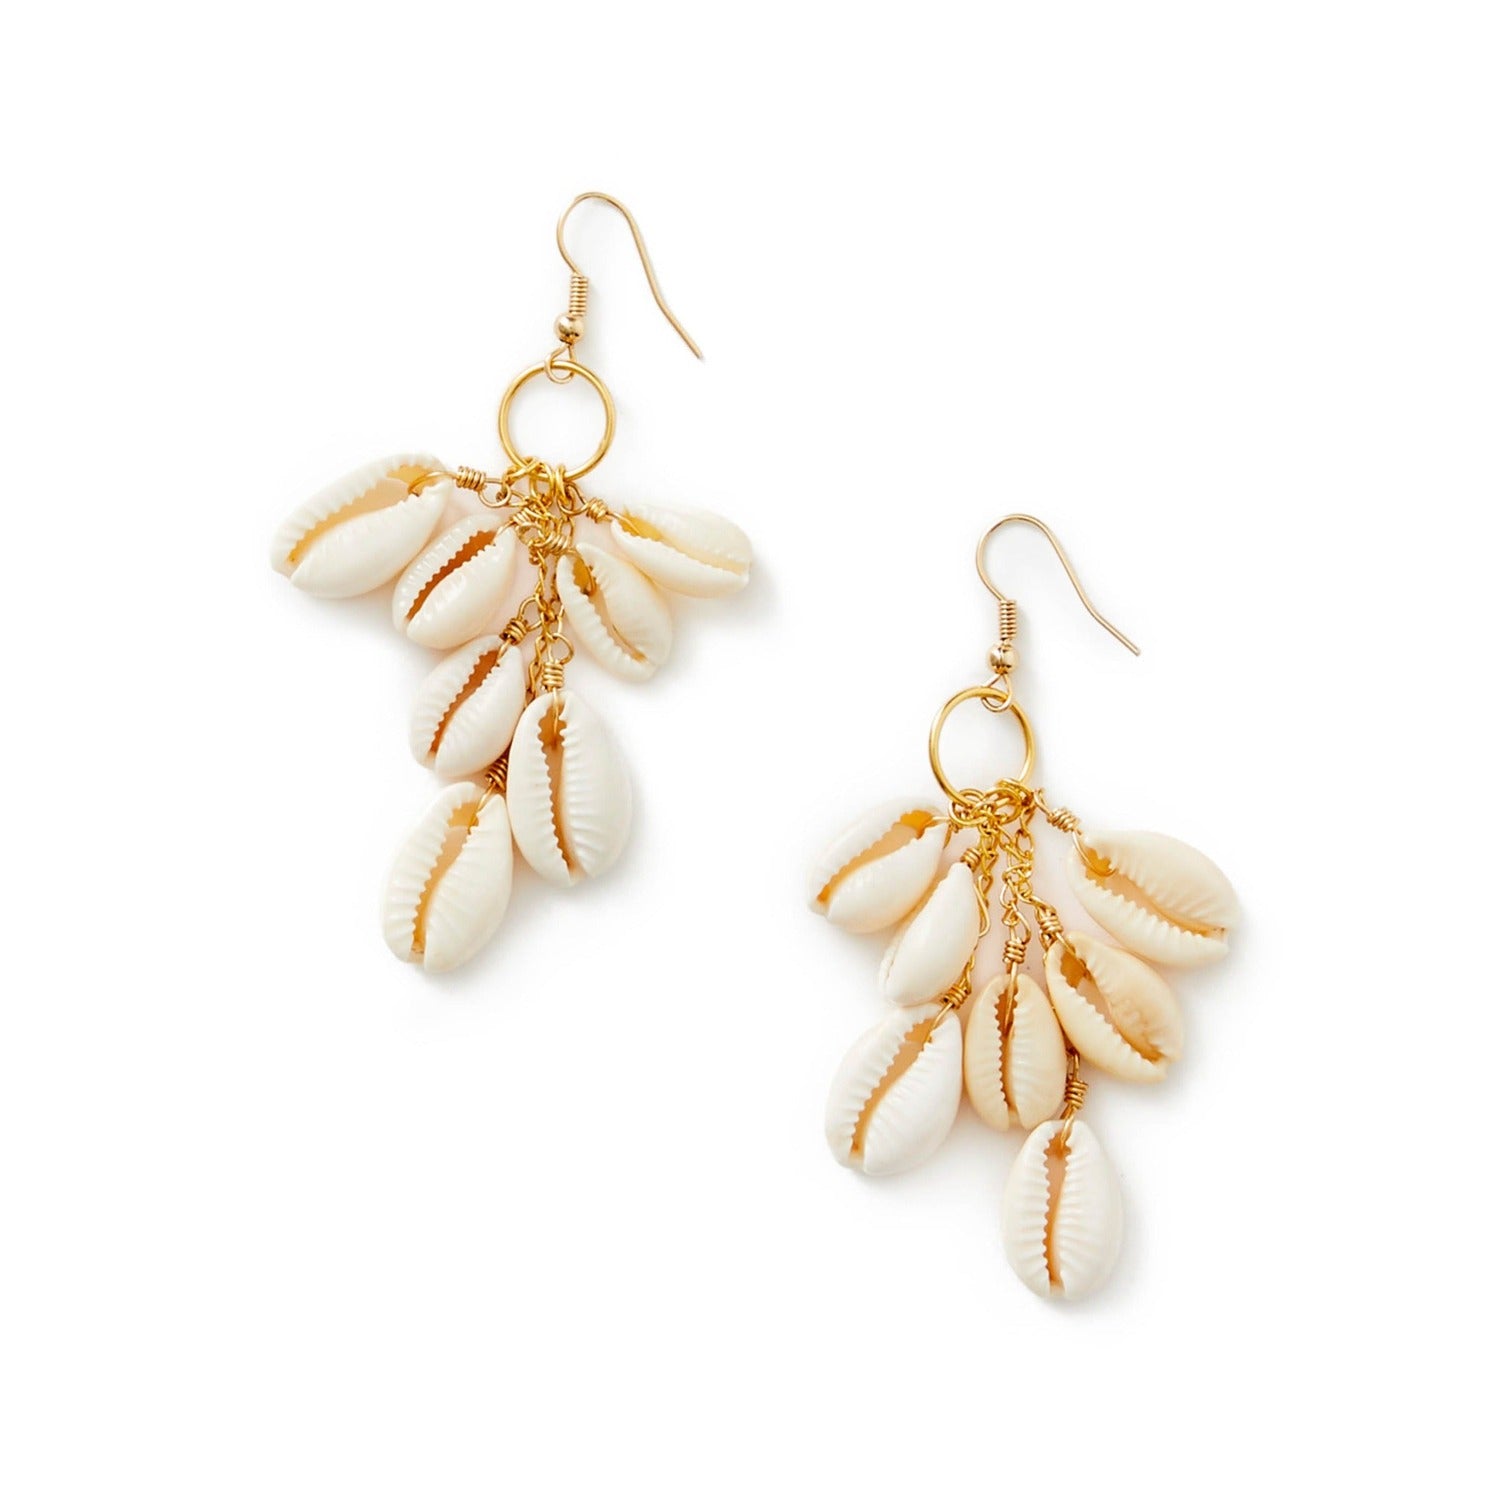 Cowrie shell dangling earrings